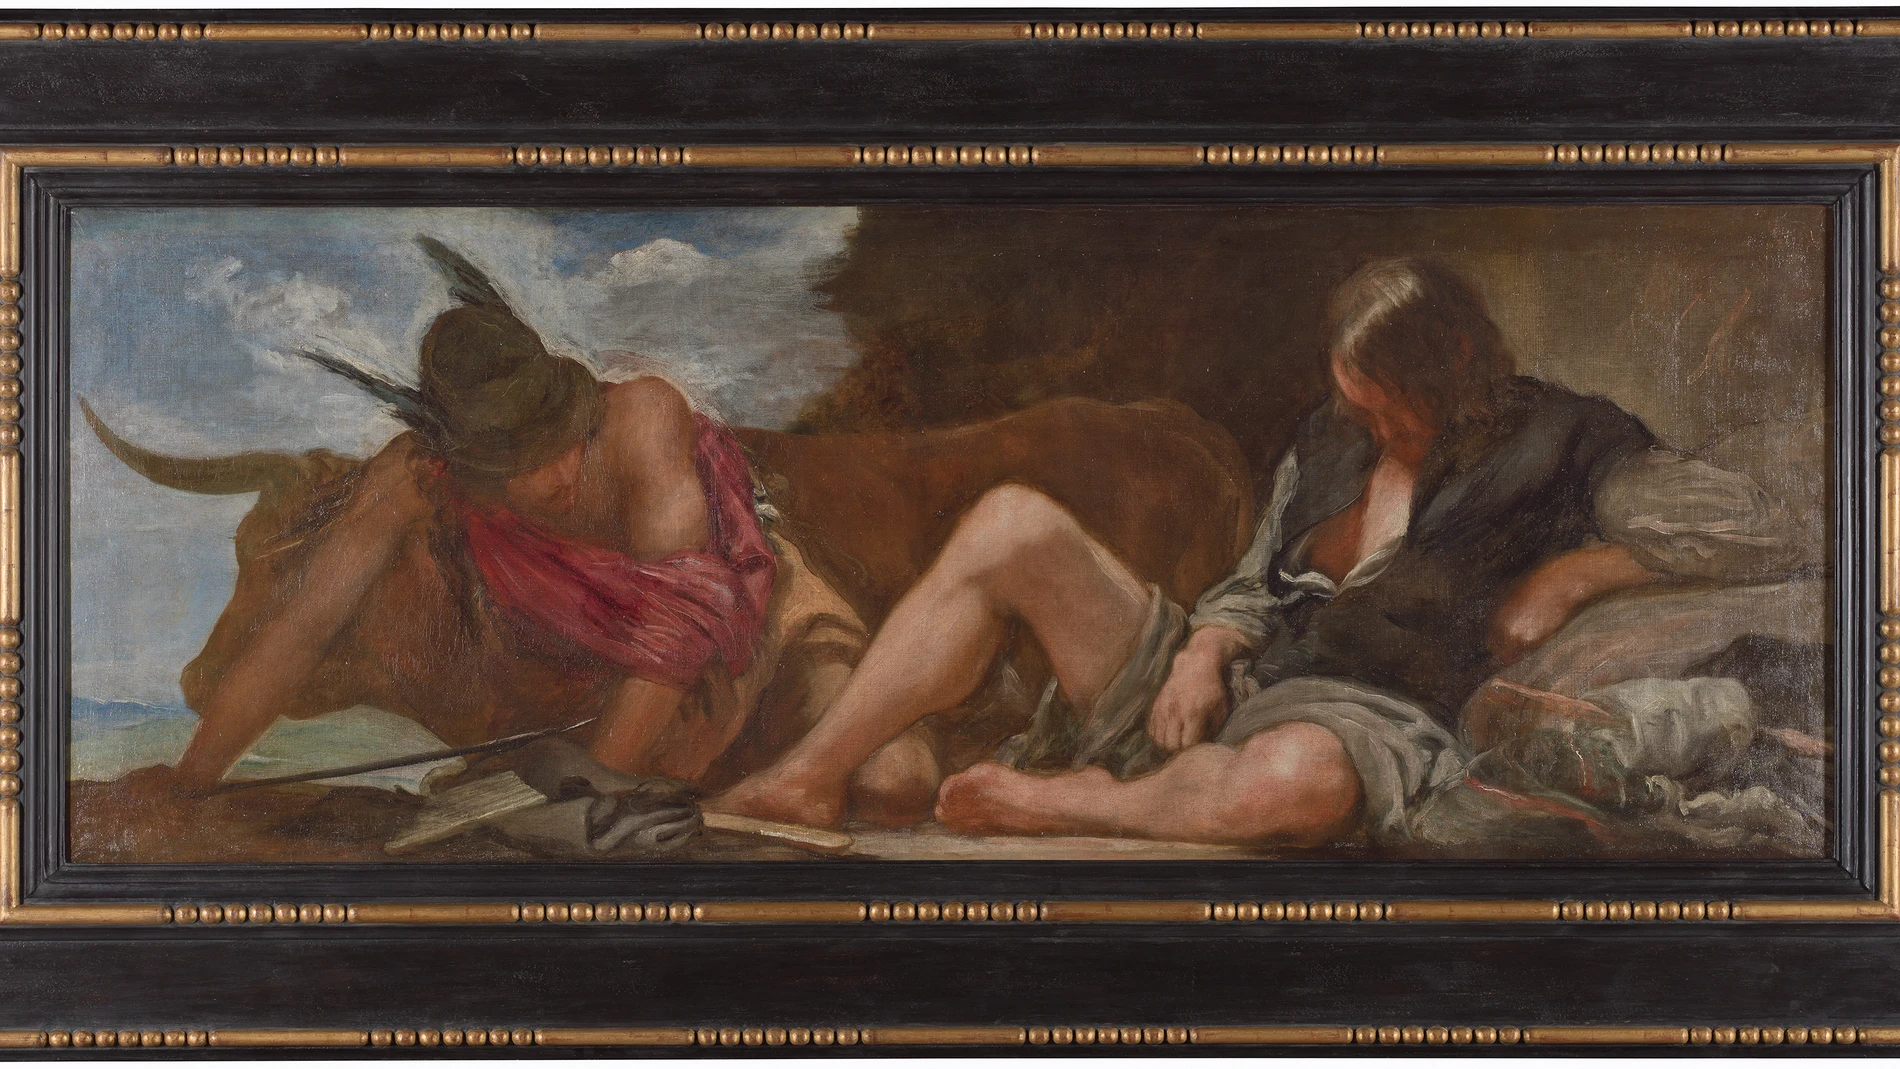 La obra de Velázquez con el marco nuevo que permite recuperar el formato inicial de la pintura